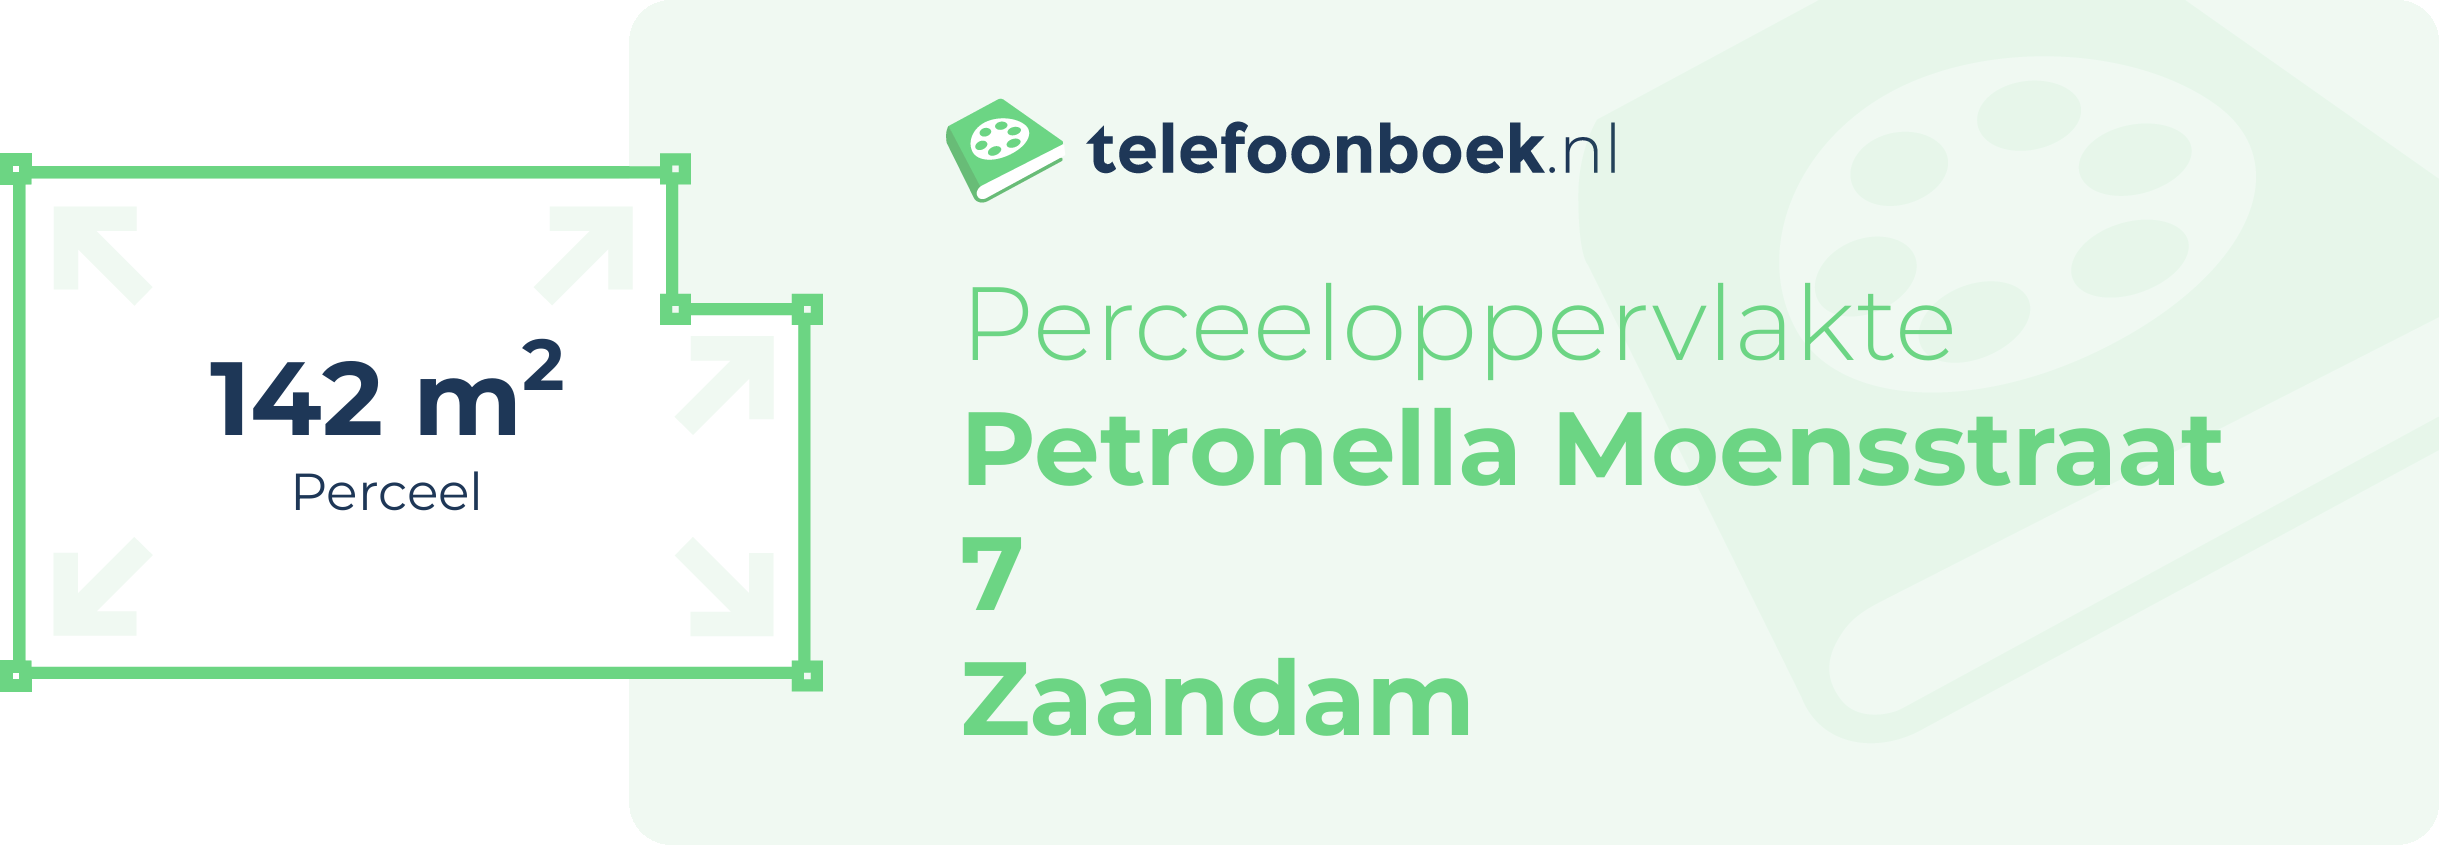 Perceeloppervlakte Petronella Moensstraat 7 Zaandam